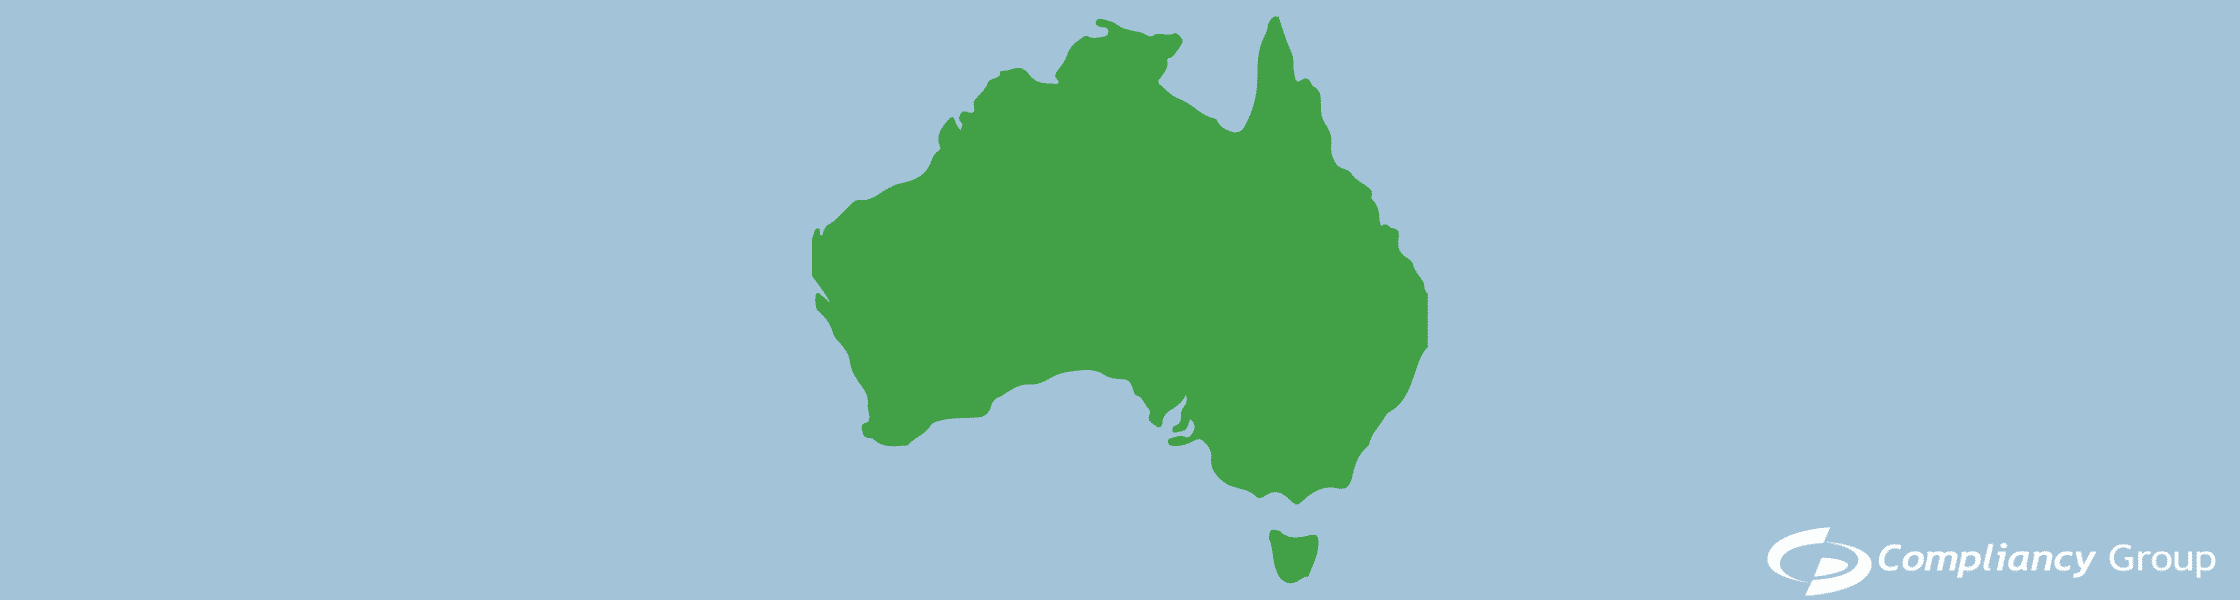 HIPAA Australia